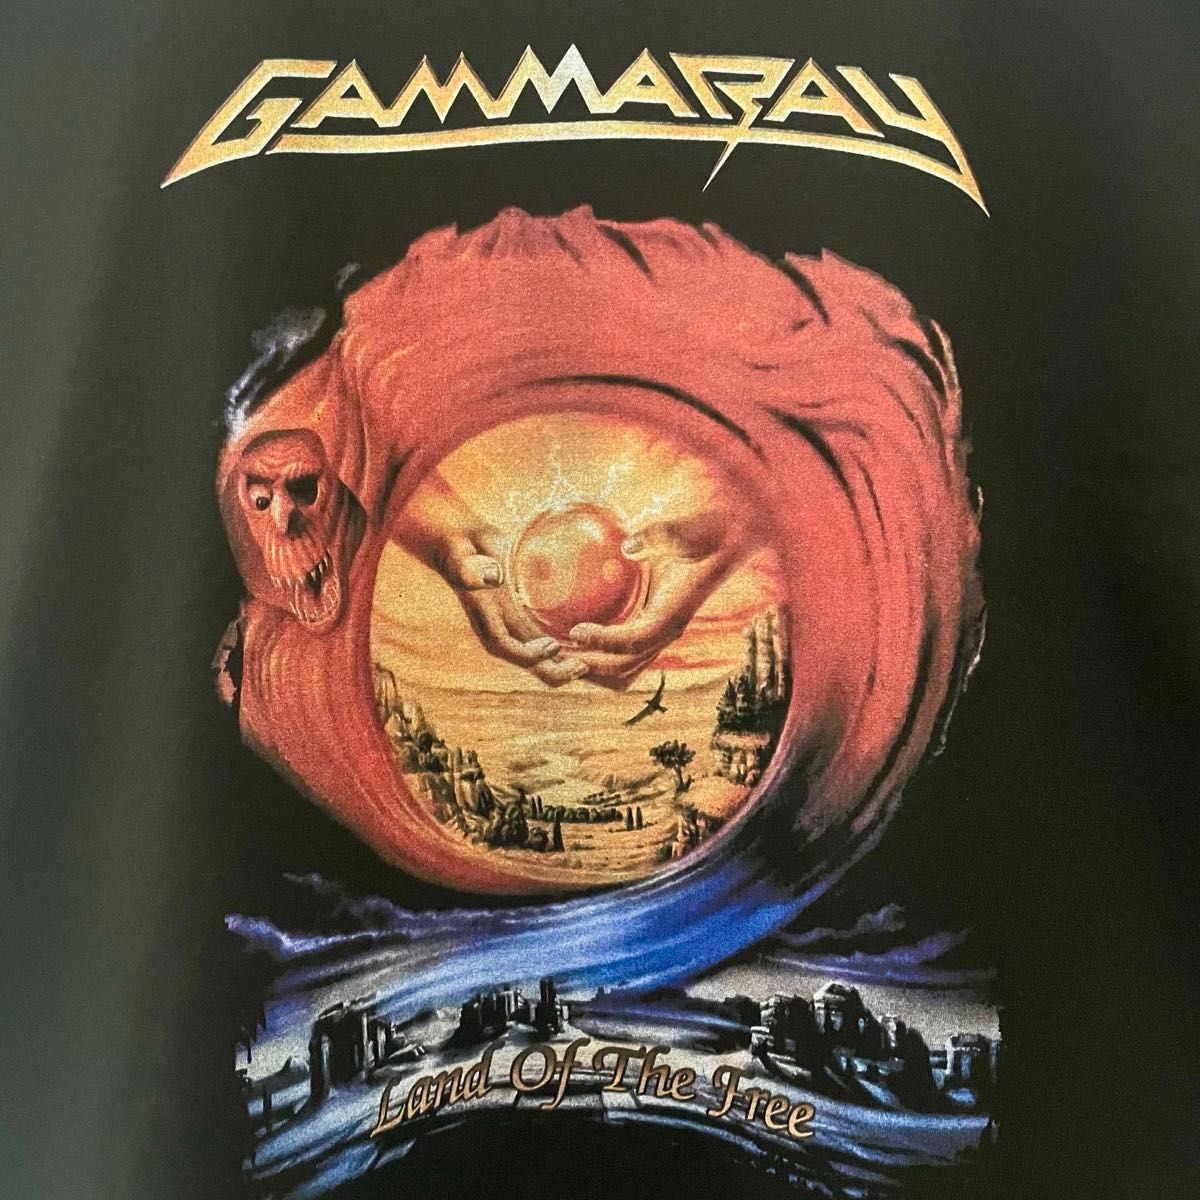 GAMMA RAY Tシャツ XLサイズ ガンマレイ Tee ジャーマンメタル